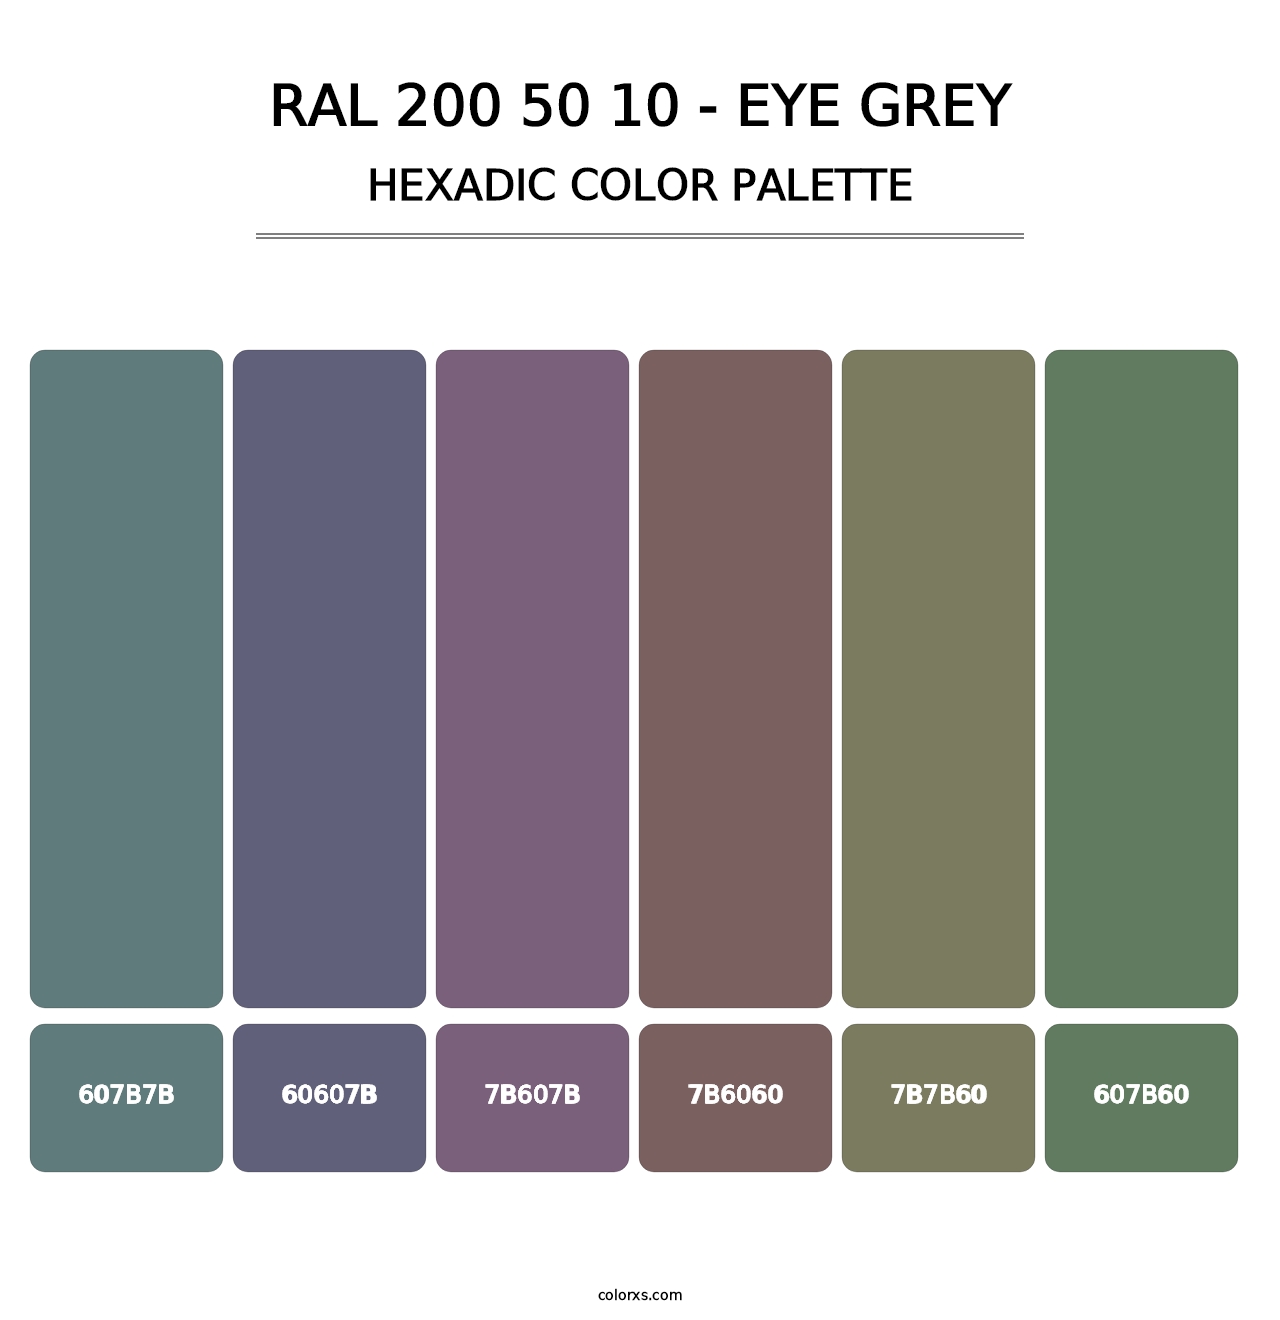 RAL 200 50 10 - Eye Grey - Hexadic Color Palette